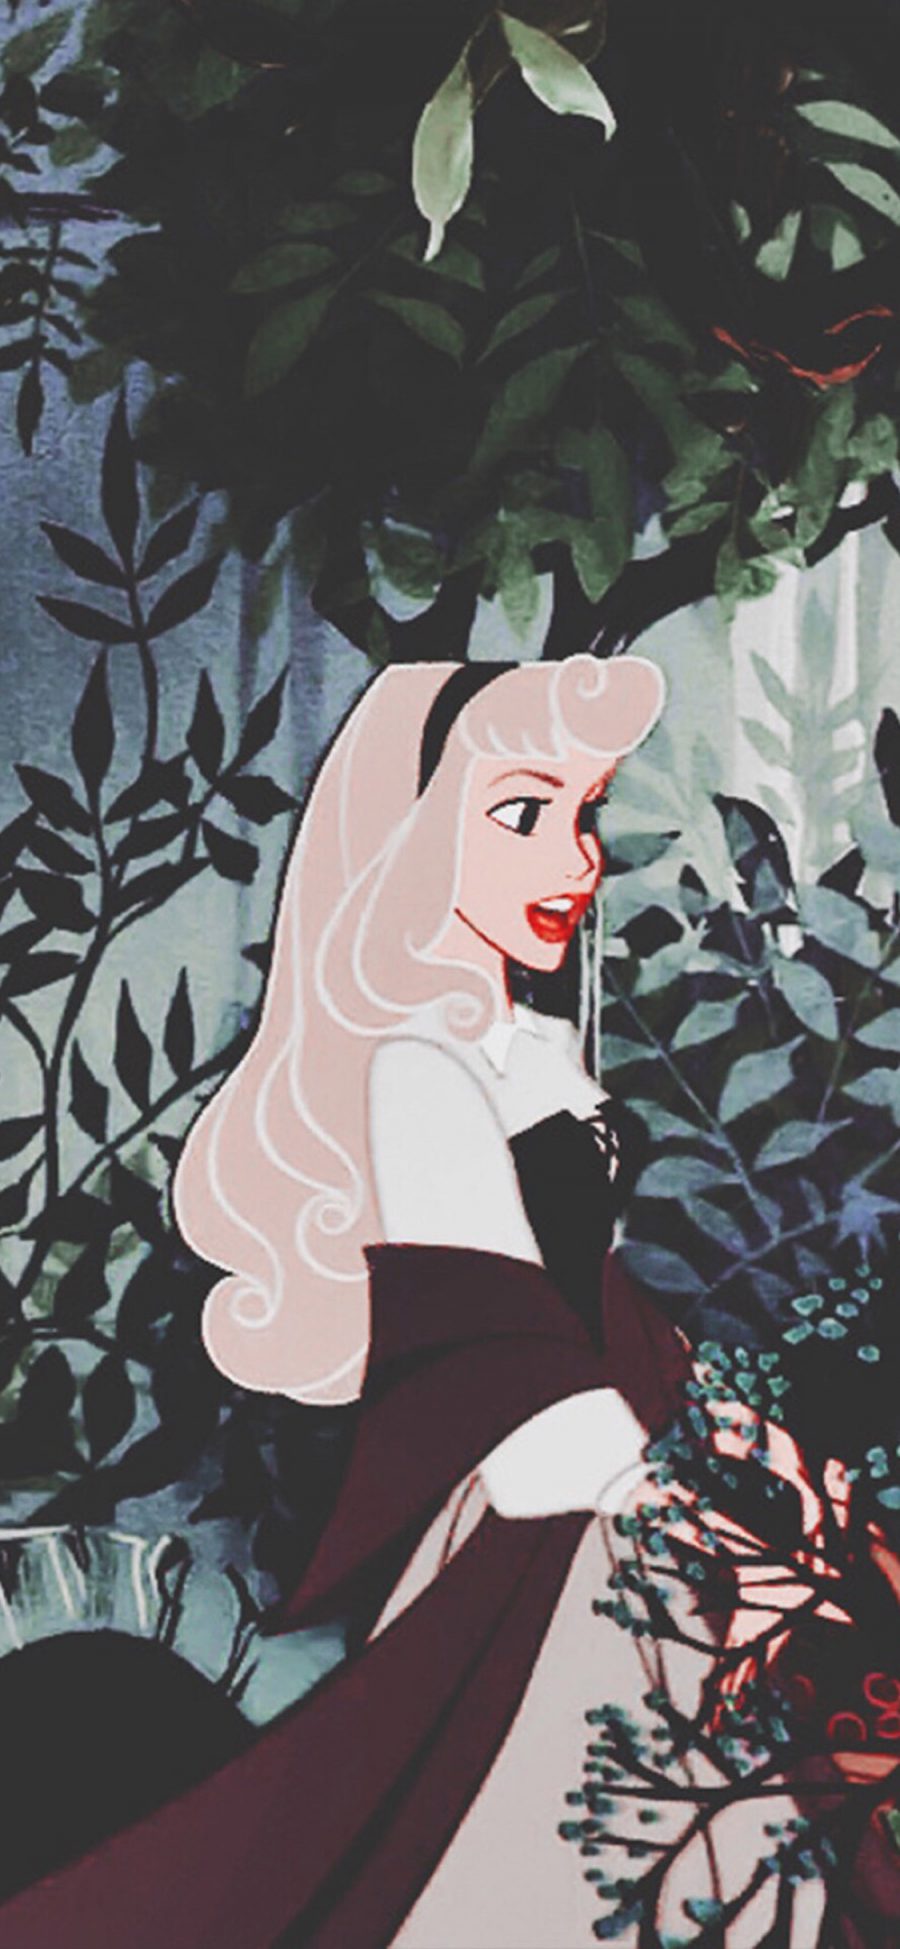 [2436×1125]迪士尼 公主 睡美人 爱洛公主 苹果手机动漫壁纸图片